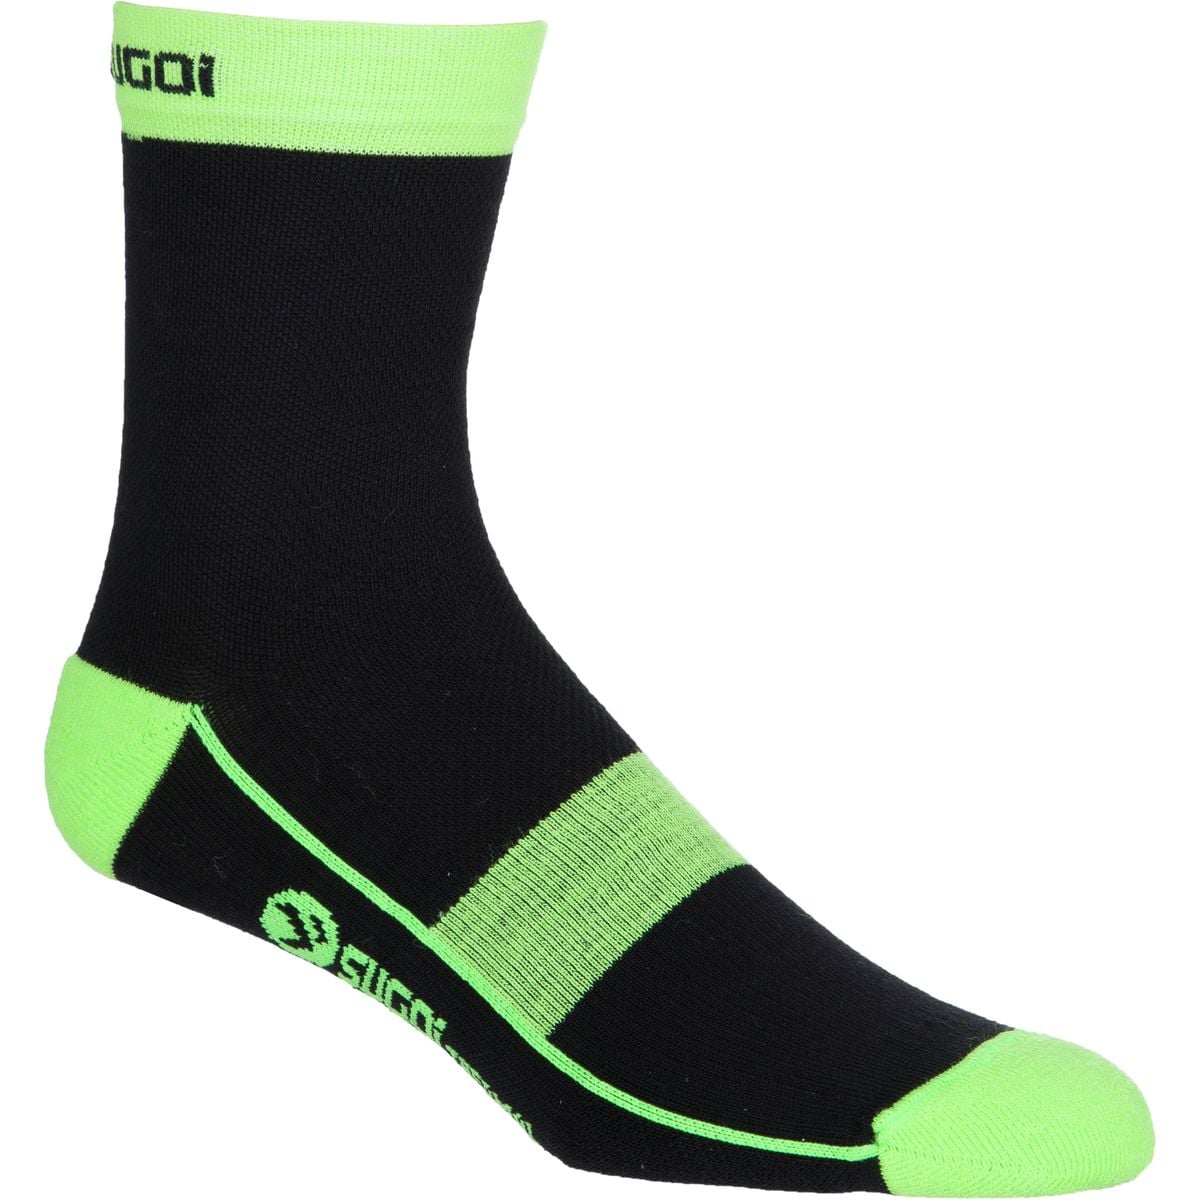 SUGOi RS Winter Sock - Men's